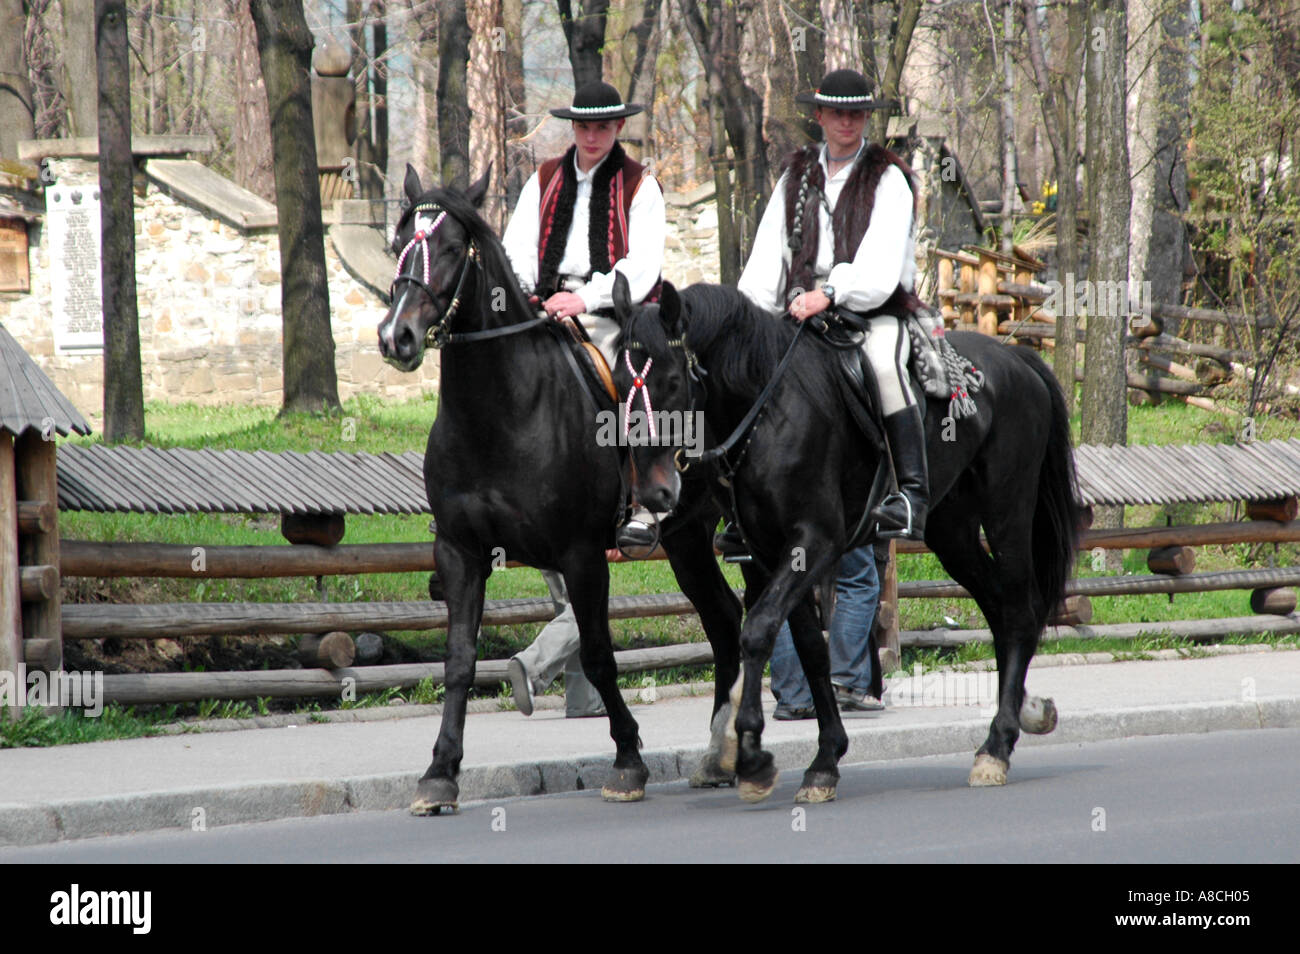 Le port de vêtements traditionnels polonais Highlanders de l'équitation à Zakopane Banque D'Images